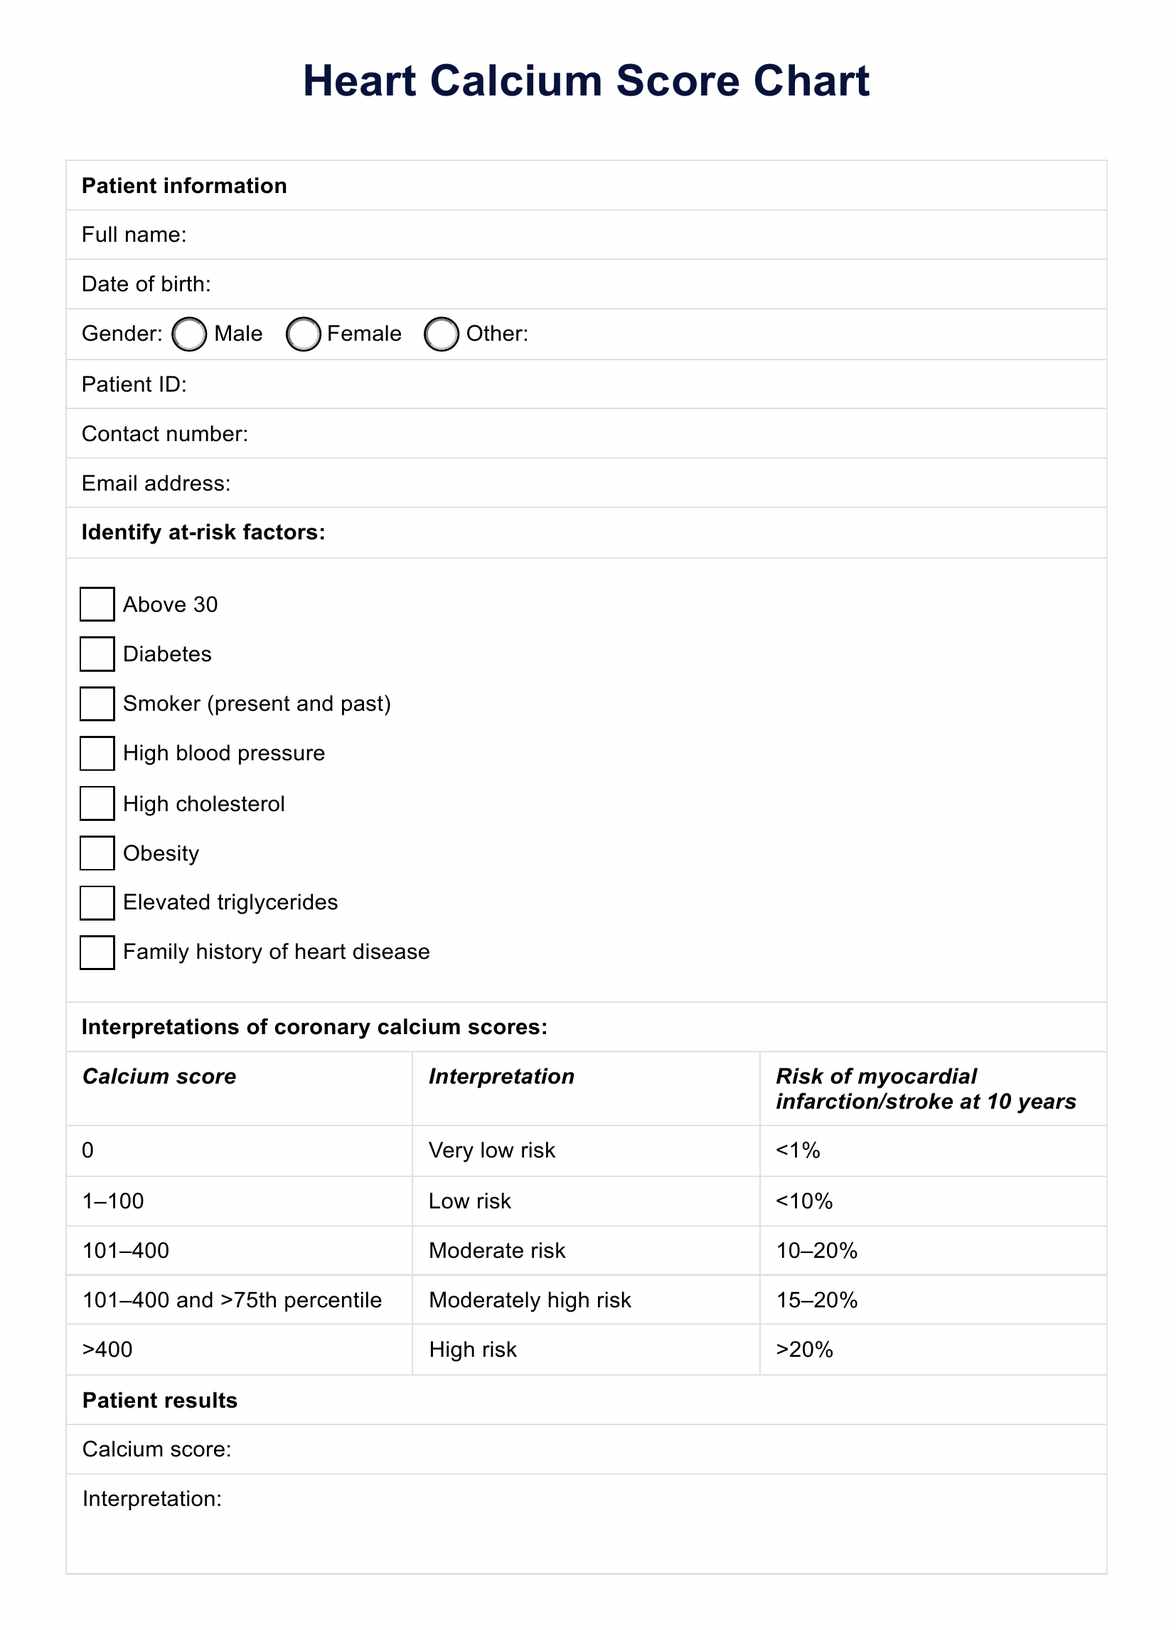 Heart Calcium Score PDF Example